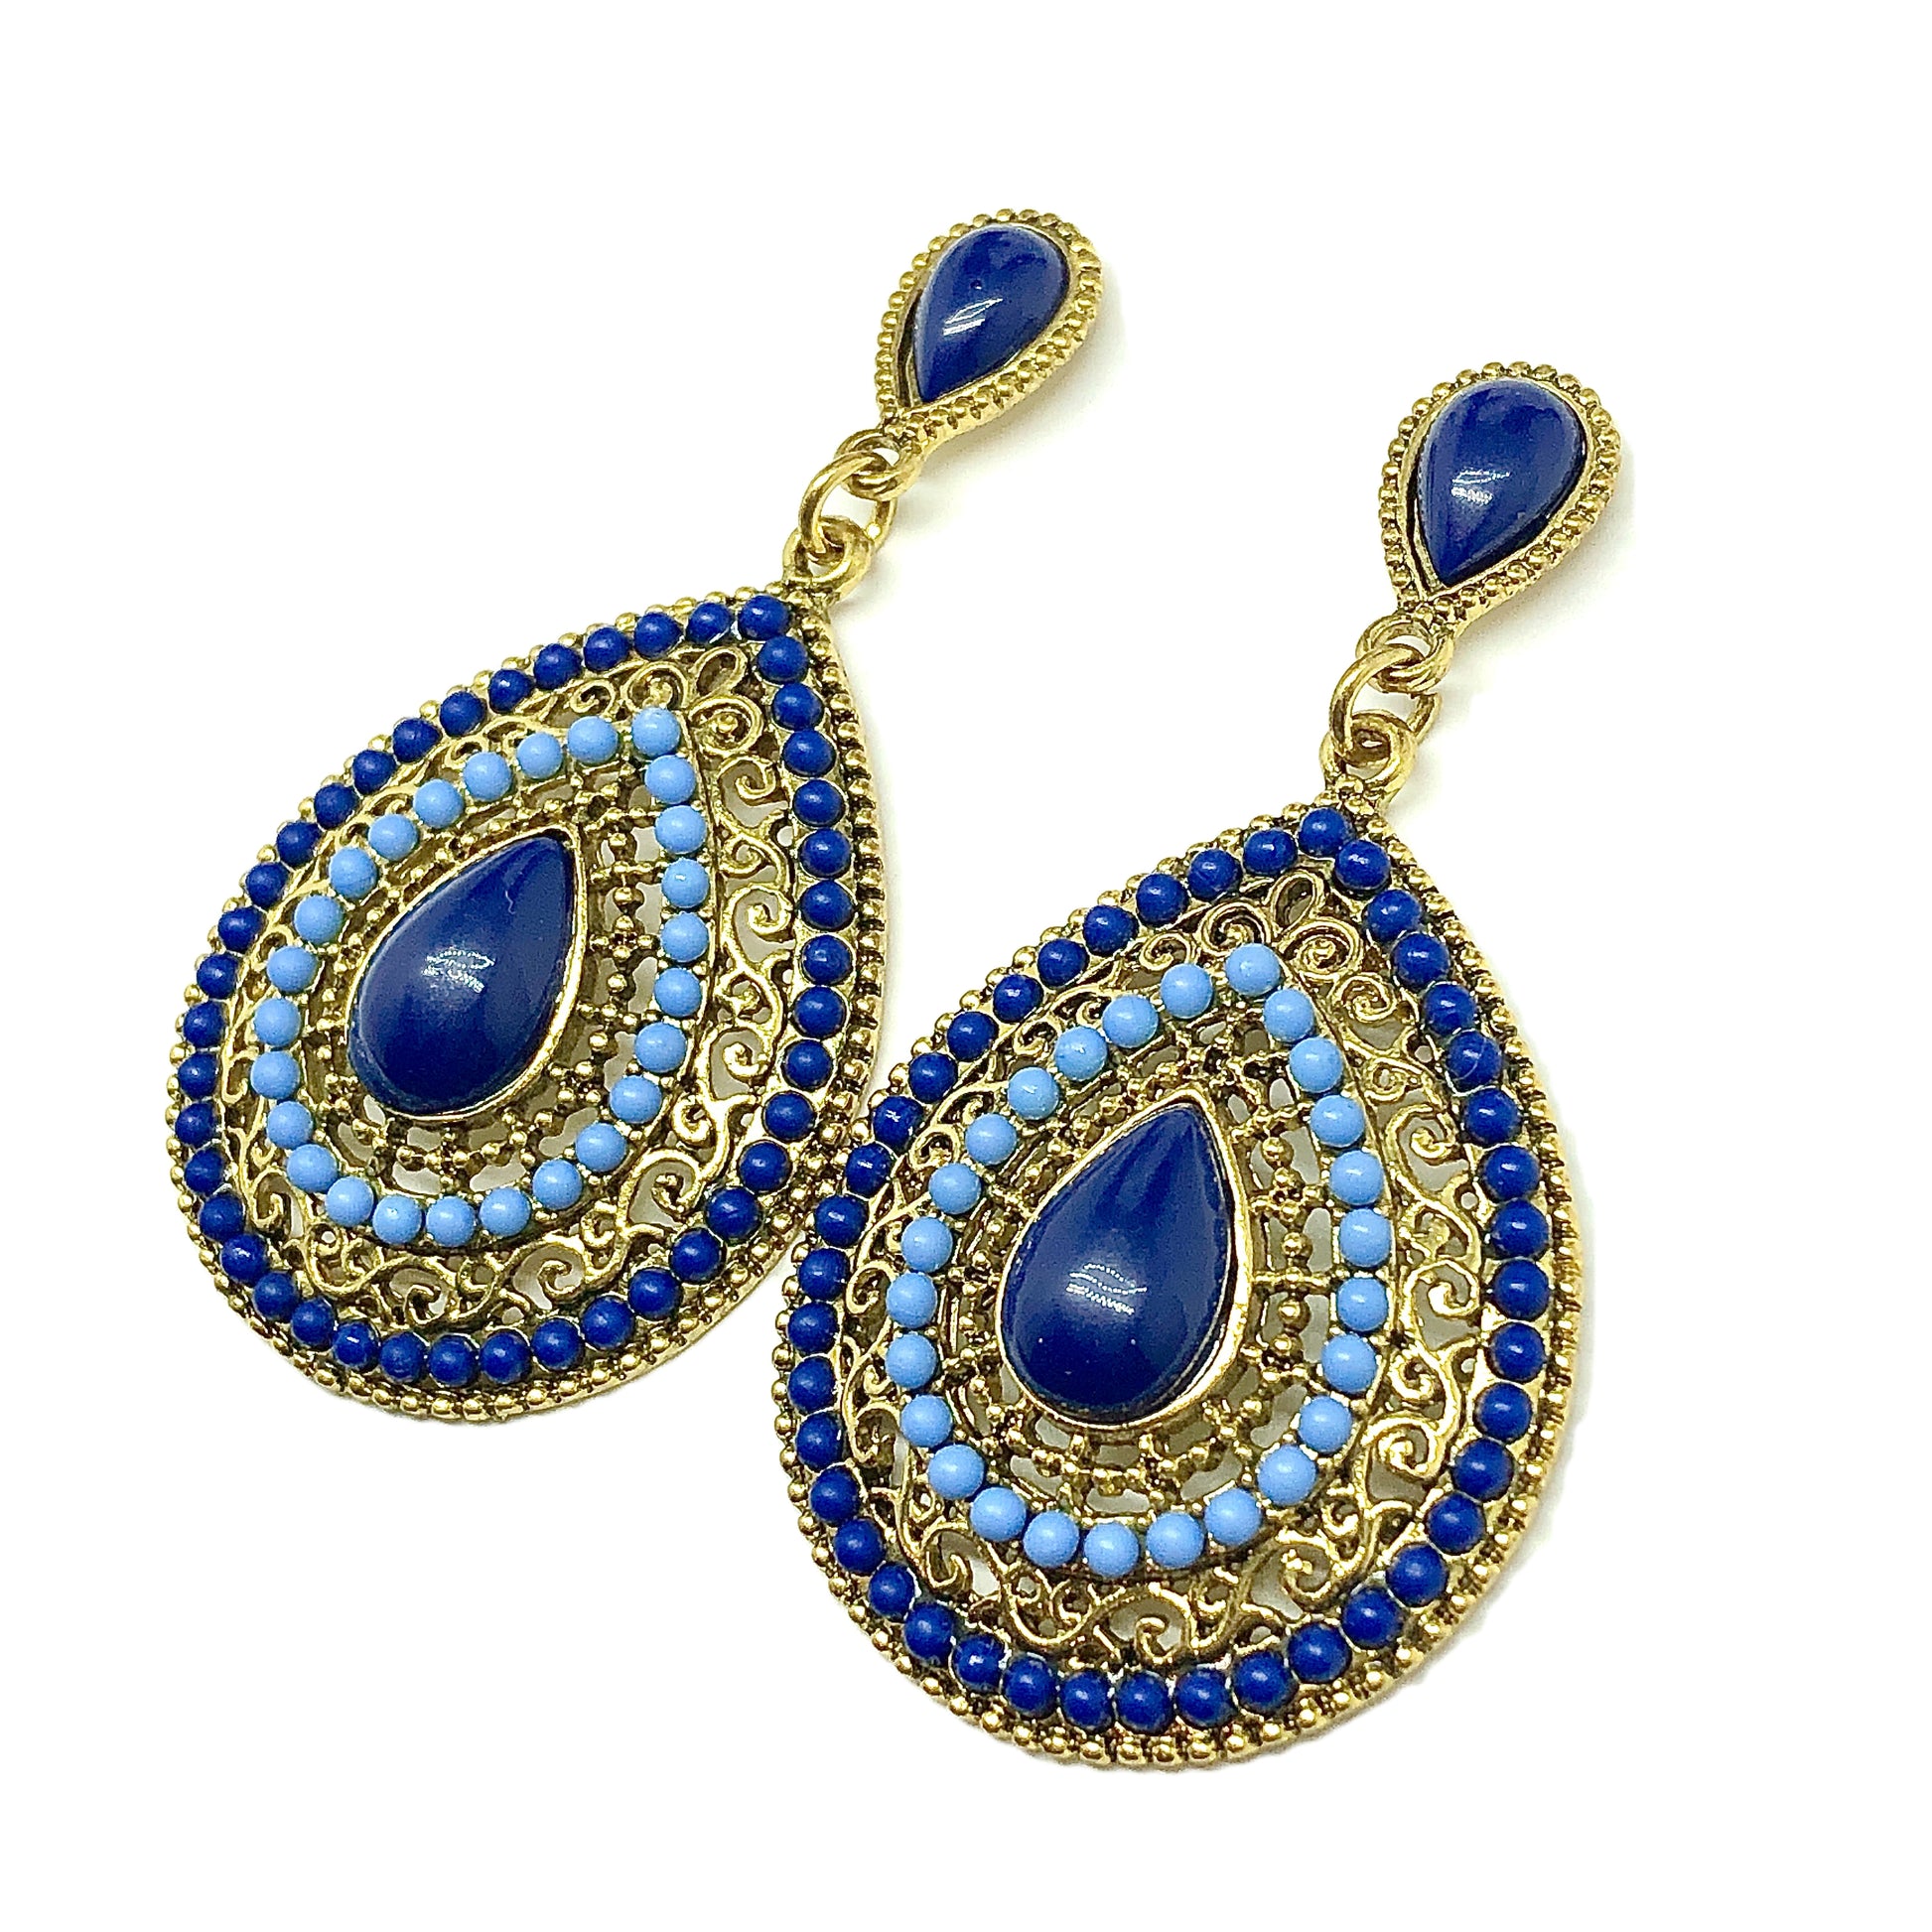 Stylish Cutout Design Blue Beaded Teardrop Style Gold Drop Earrings